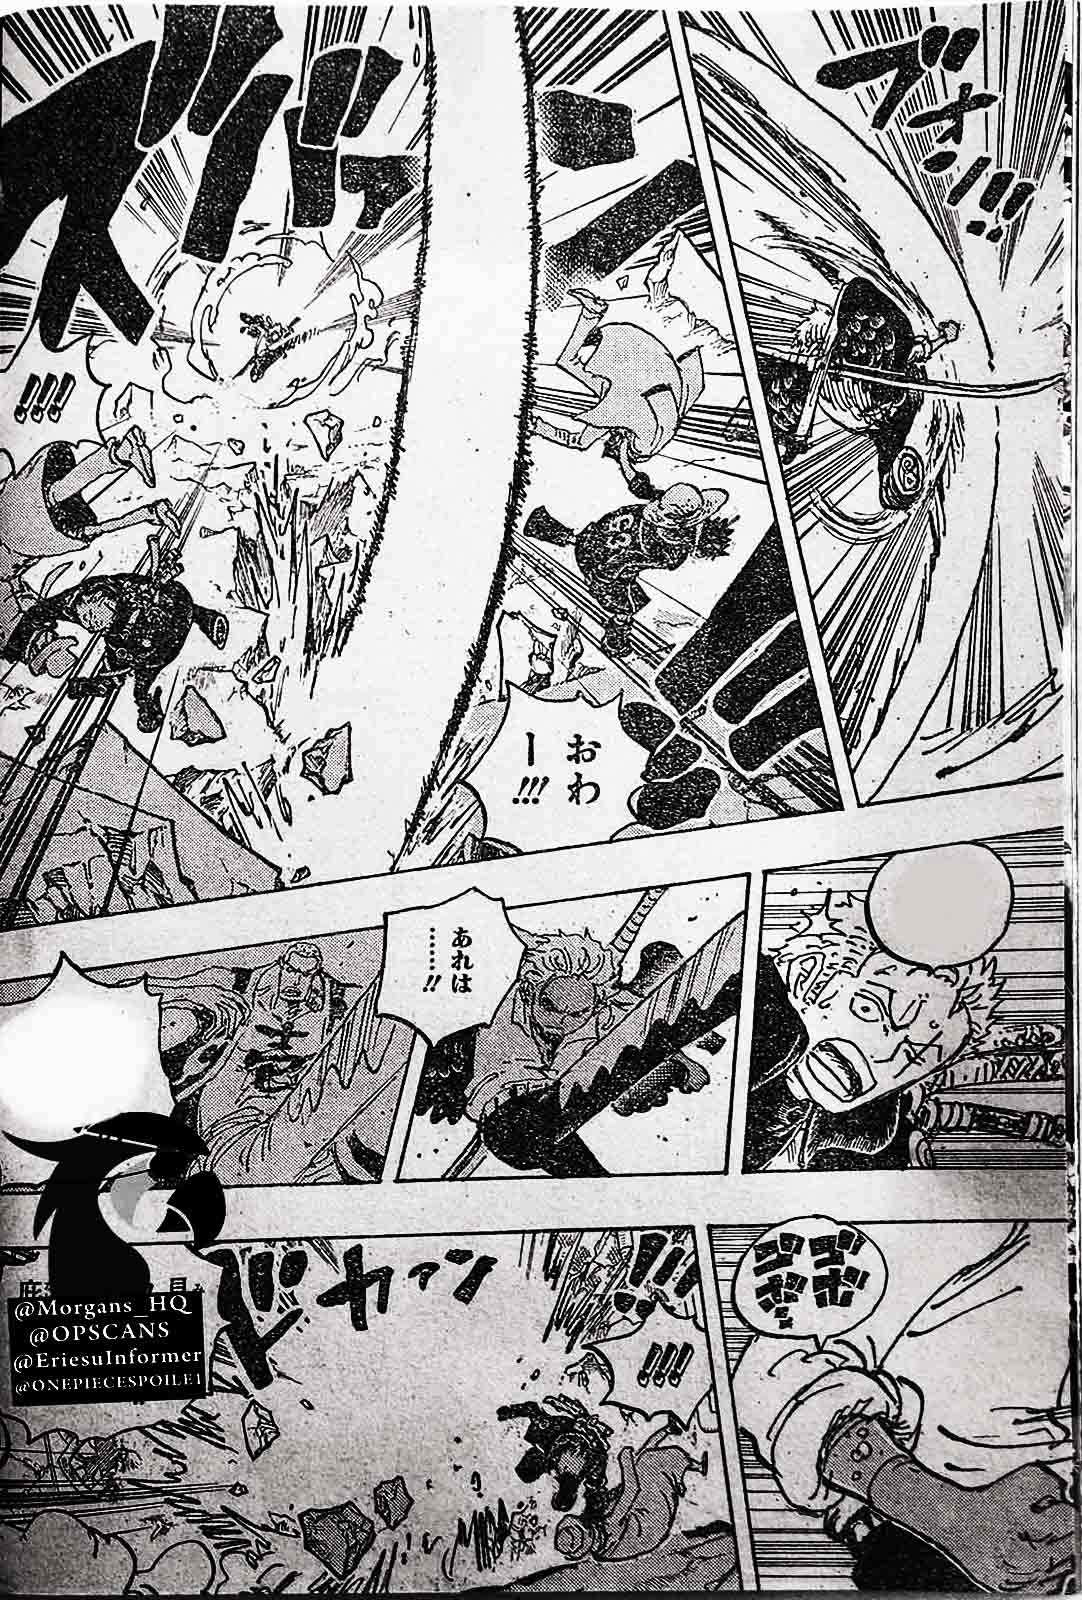 Baca manga komik One Piece Berwarna Bahasa Indonesia HD Chapter 1076r